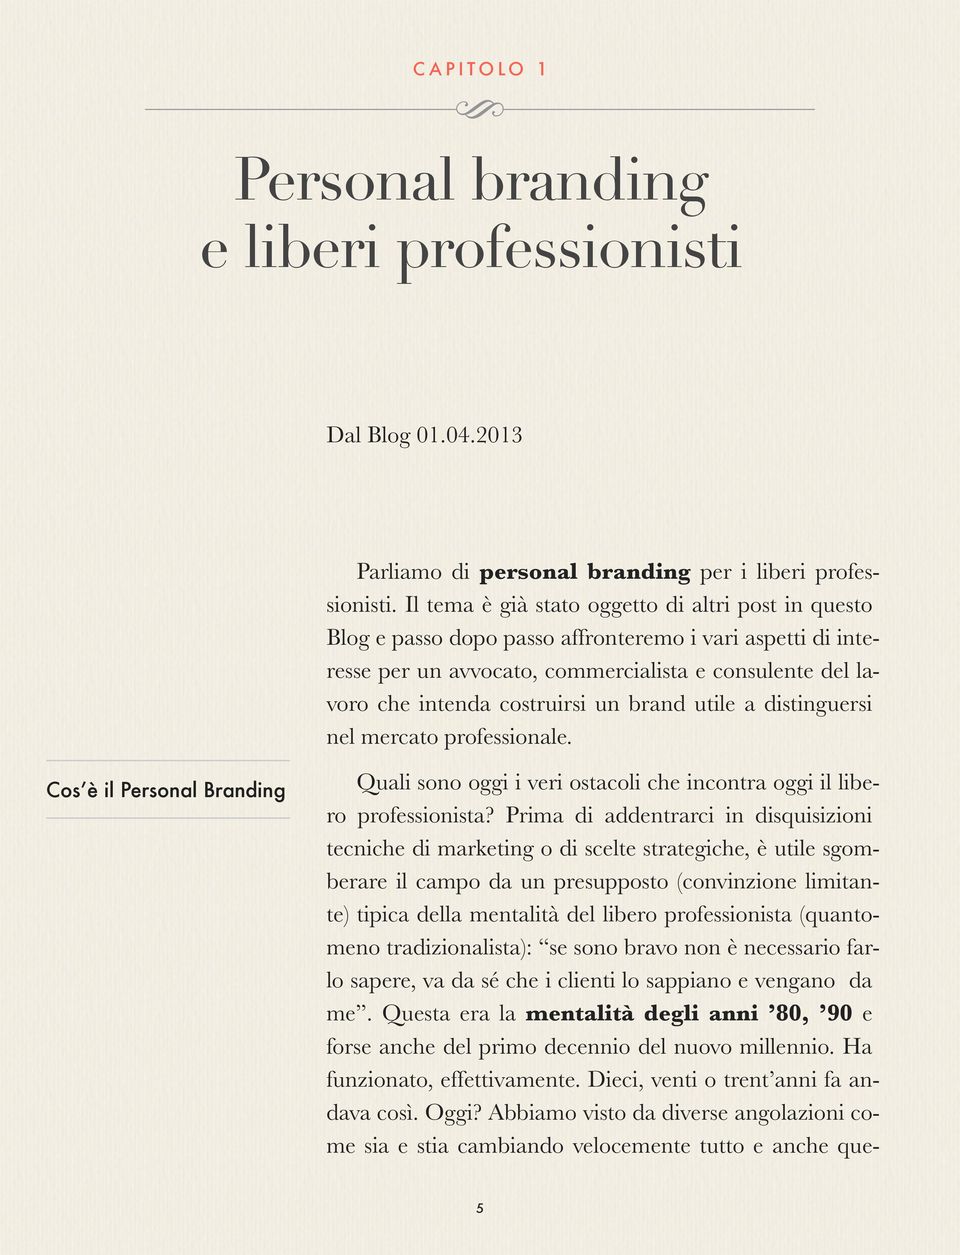 brand utile a distinguersi nel mercato professionale. Cos è il Personal Branding Quali sono oggi i veri ostacoli che incontra oggi il libero professionista?